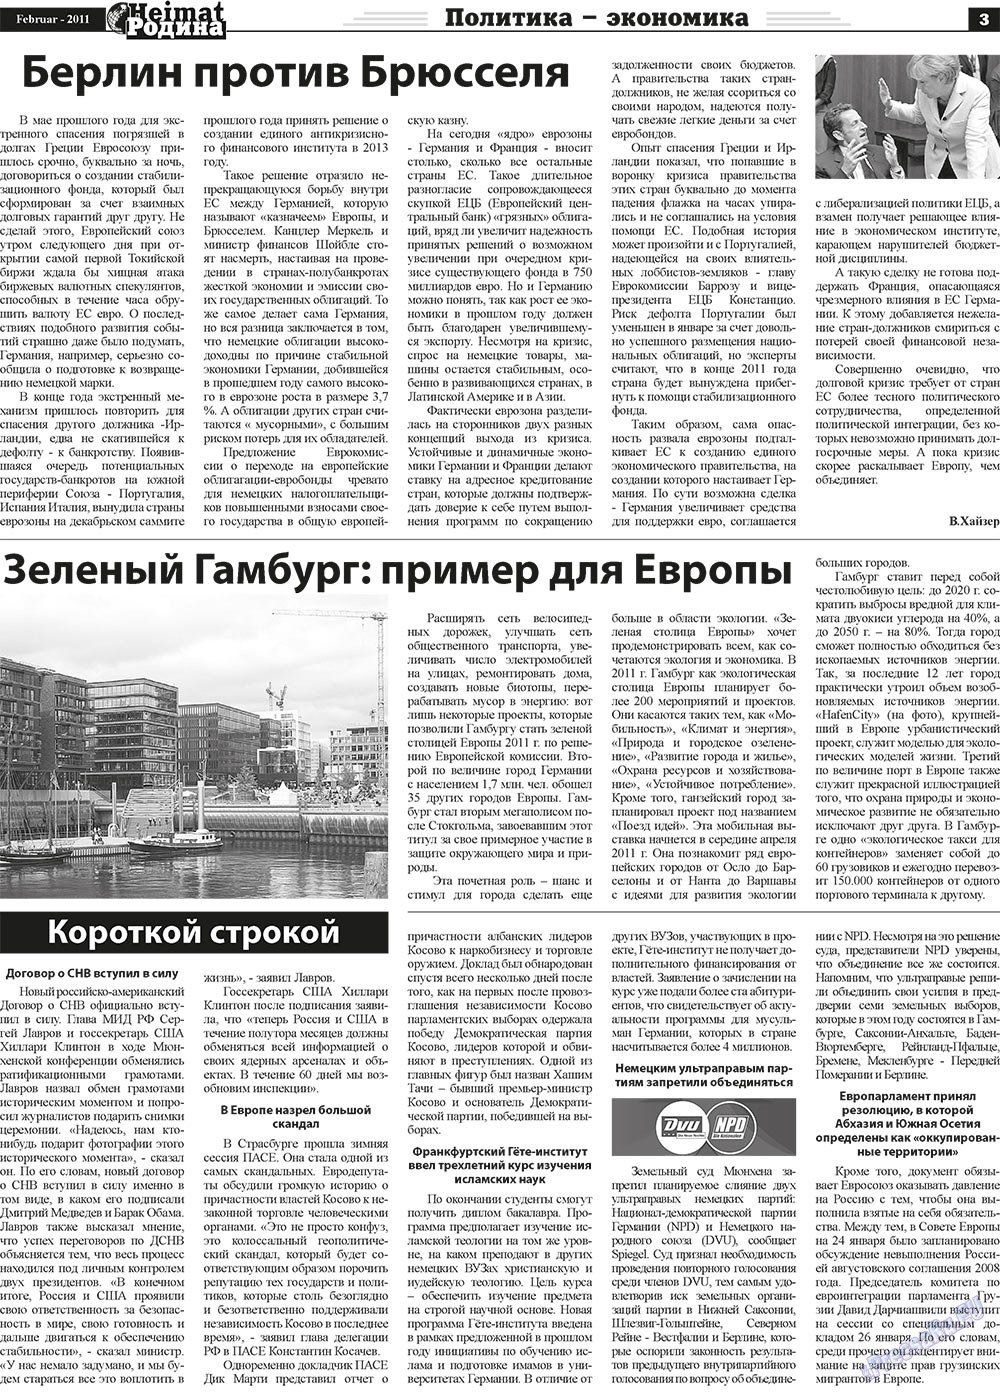 Heimat-Родина (газета). 2011 год, номер 2, стр. 3